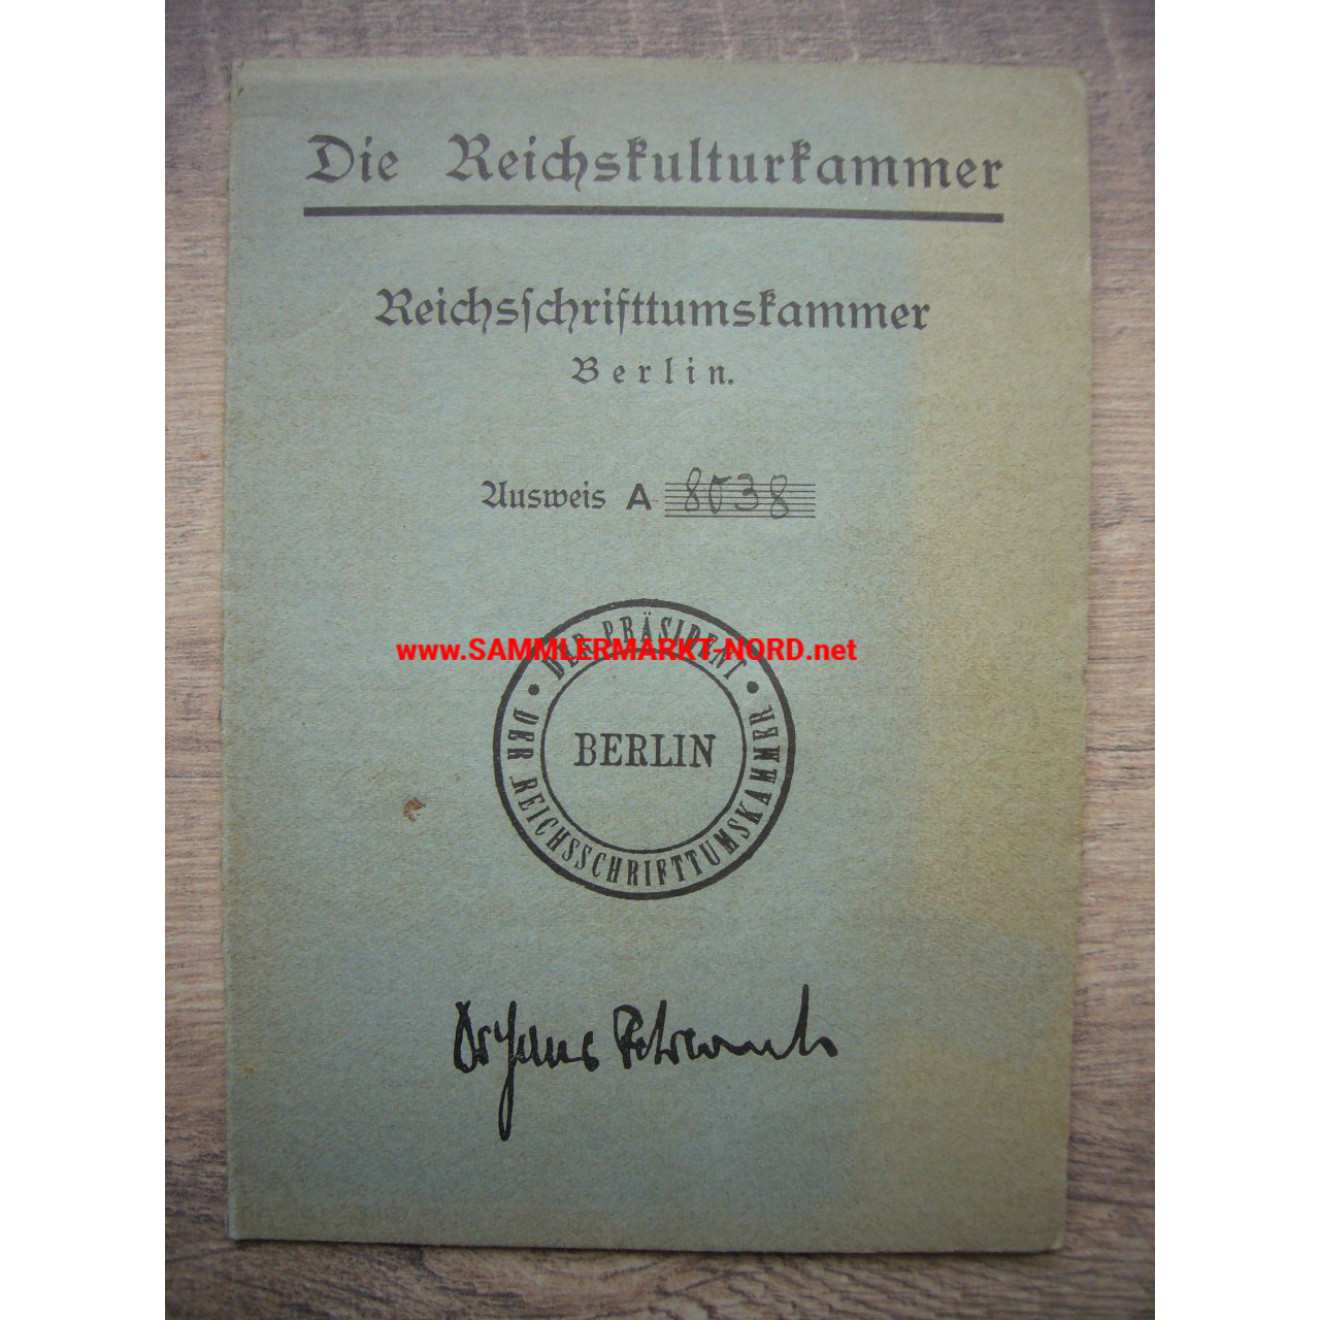 Die Reichskulturkammer - Reichsschriftturmkammer - Mitgliedsausweis